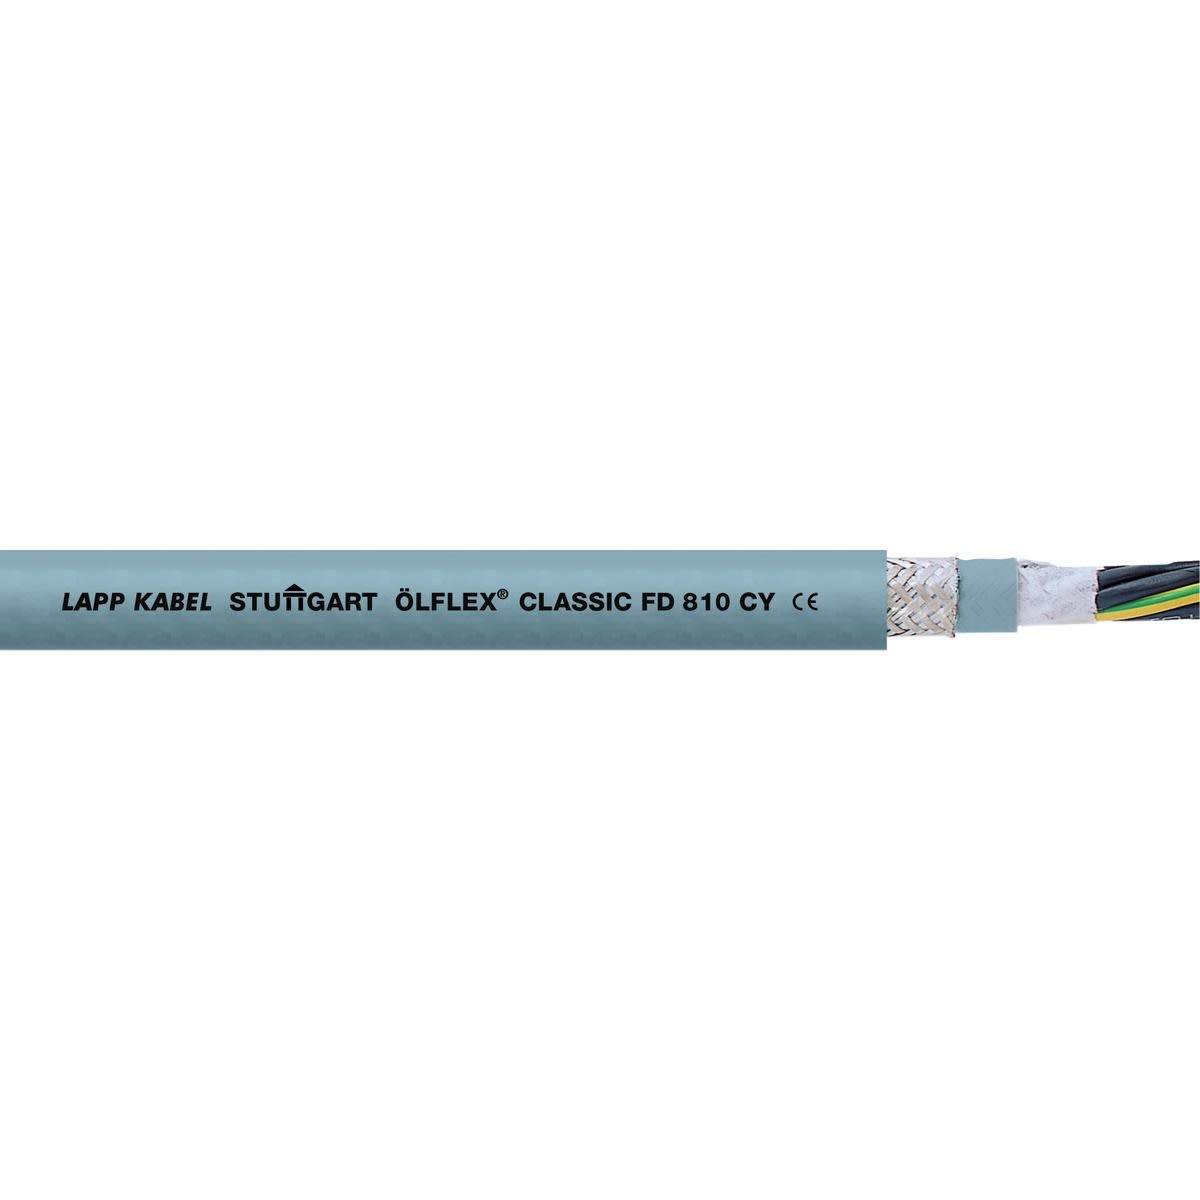 Lapp - ÖLFLEX CLASSIC FD 810 CY 3G0,75